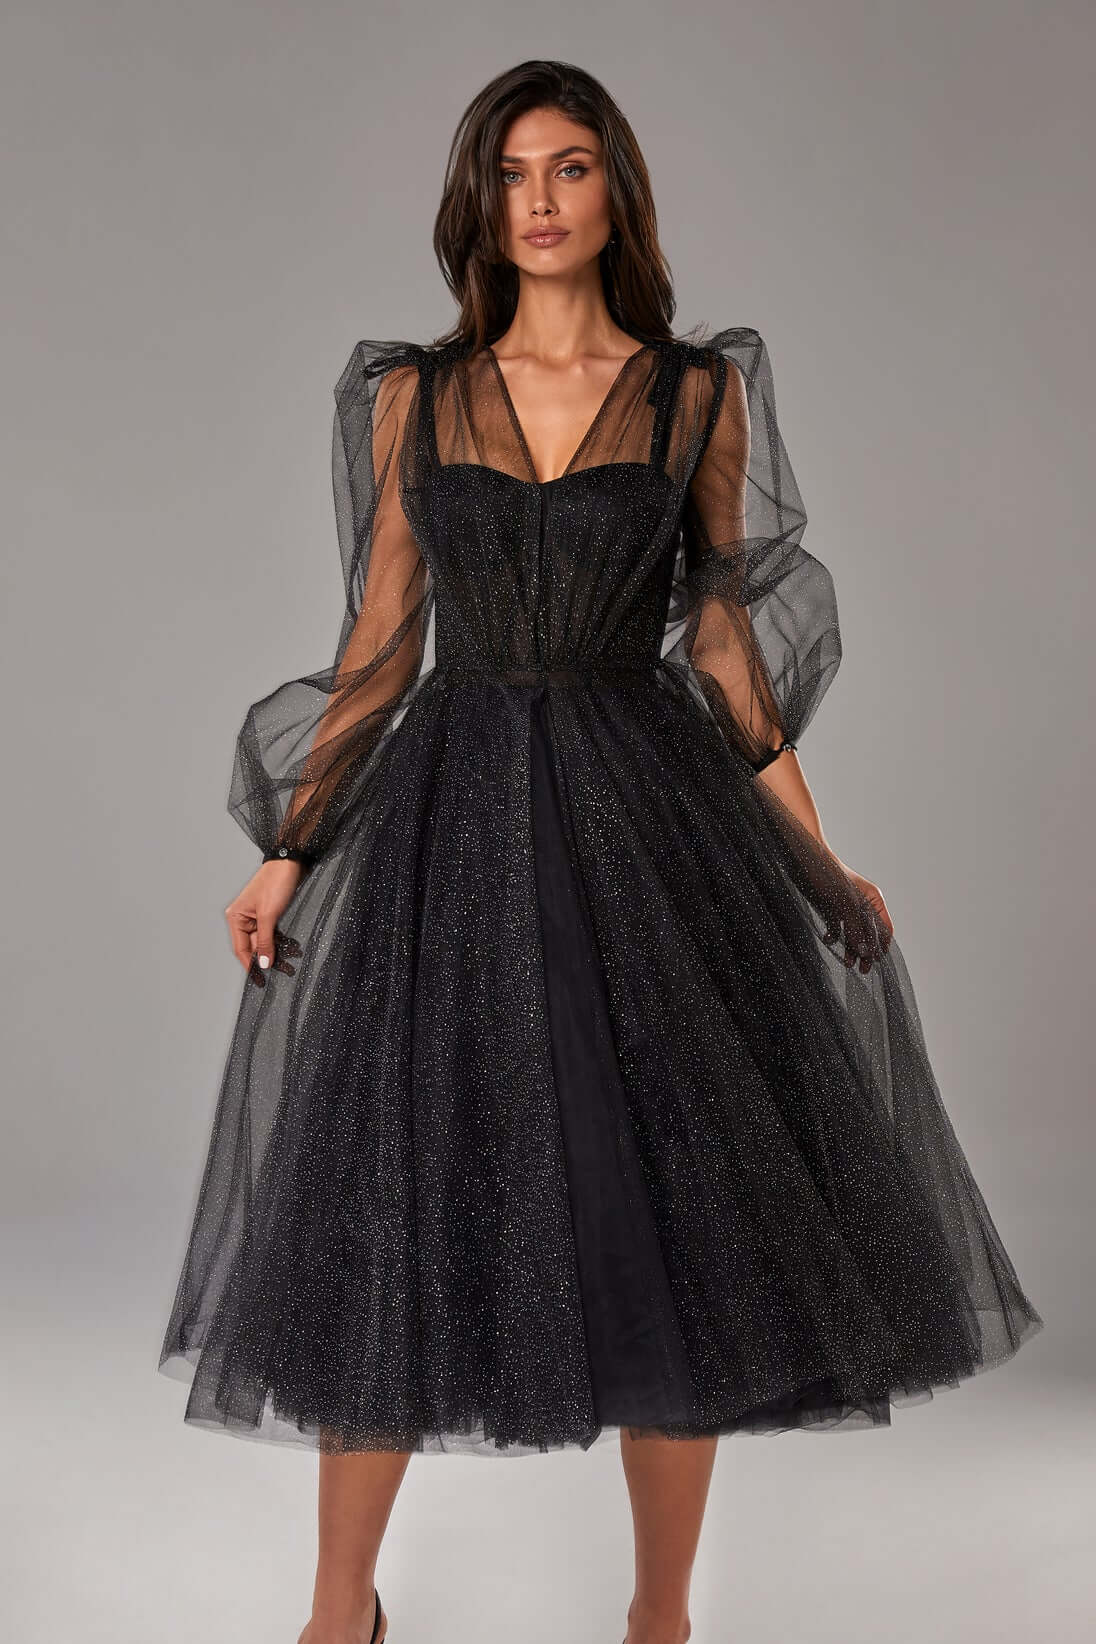 glitter black dress